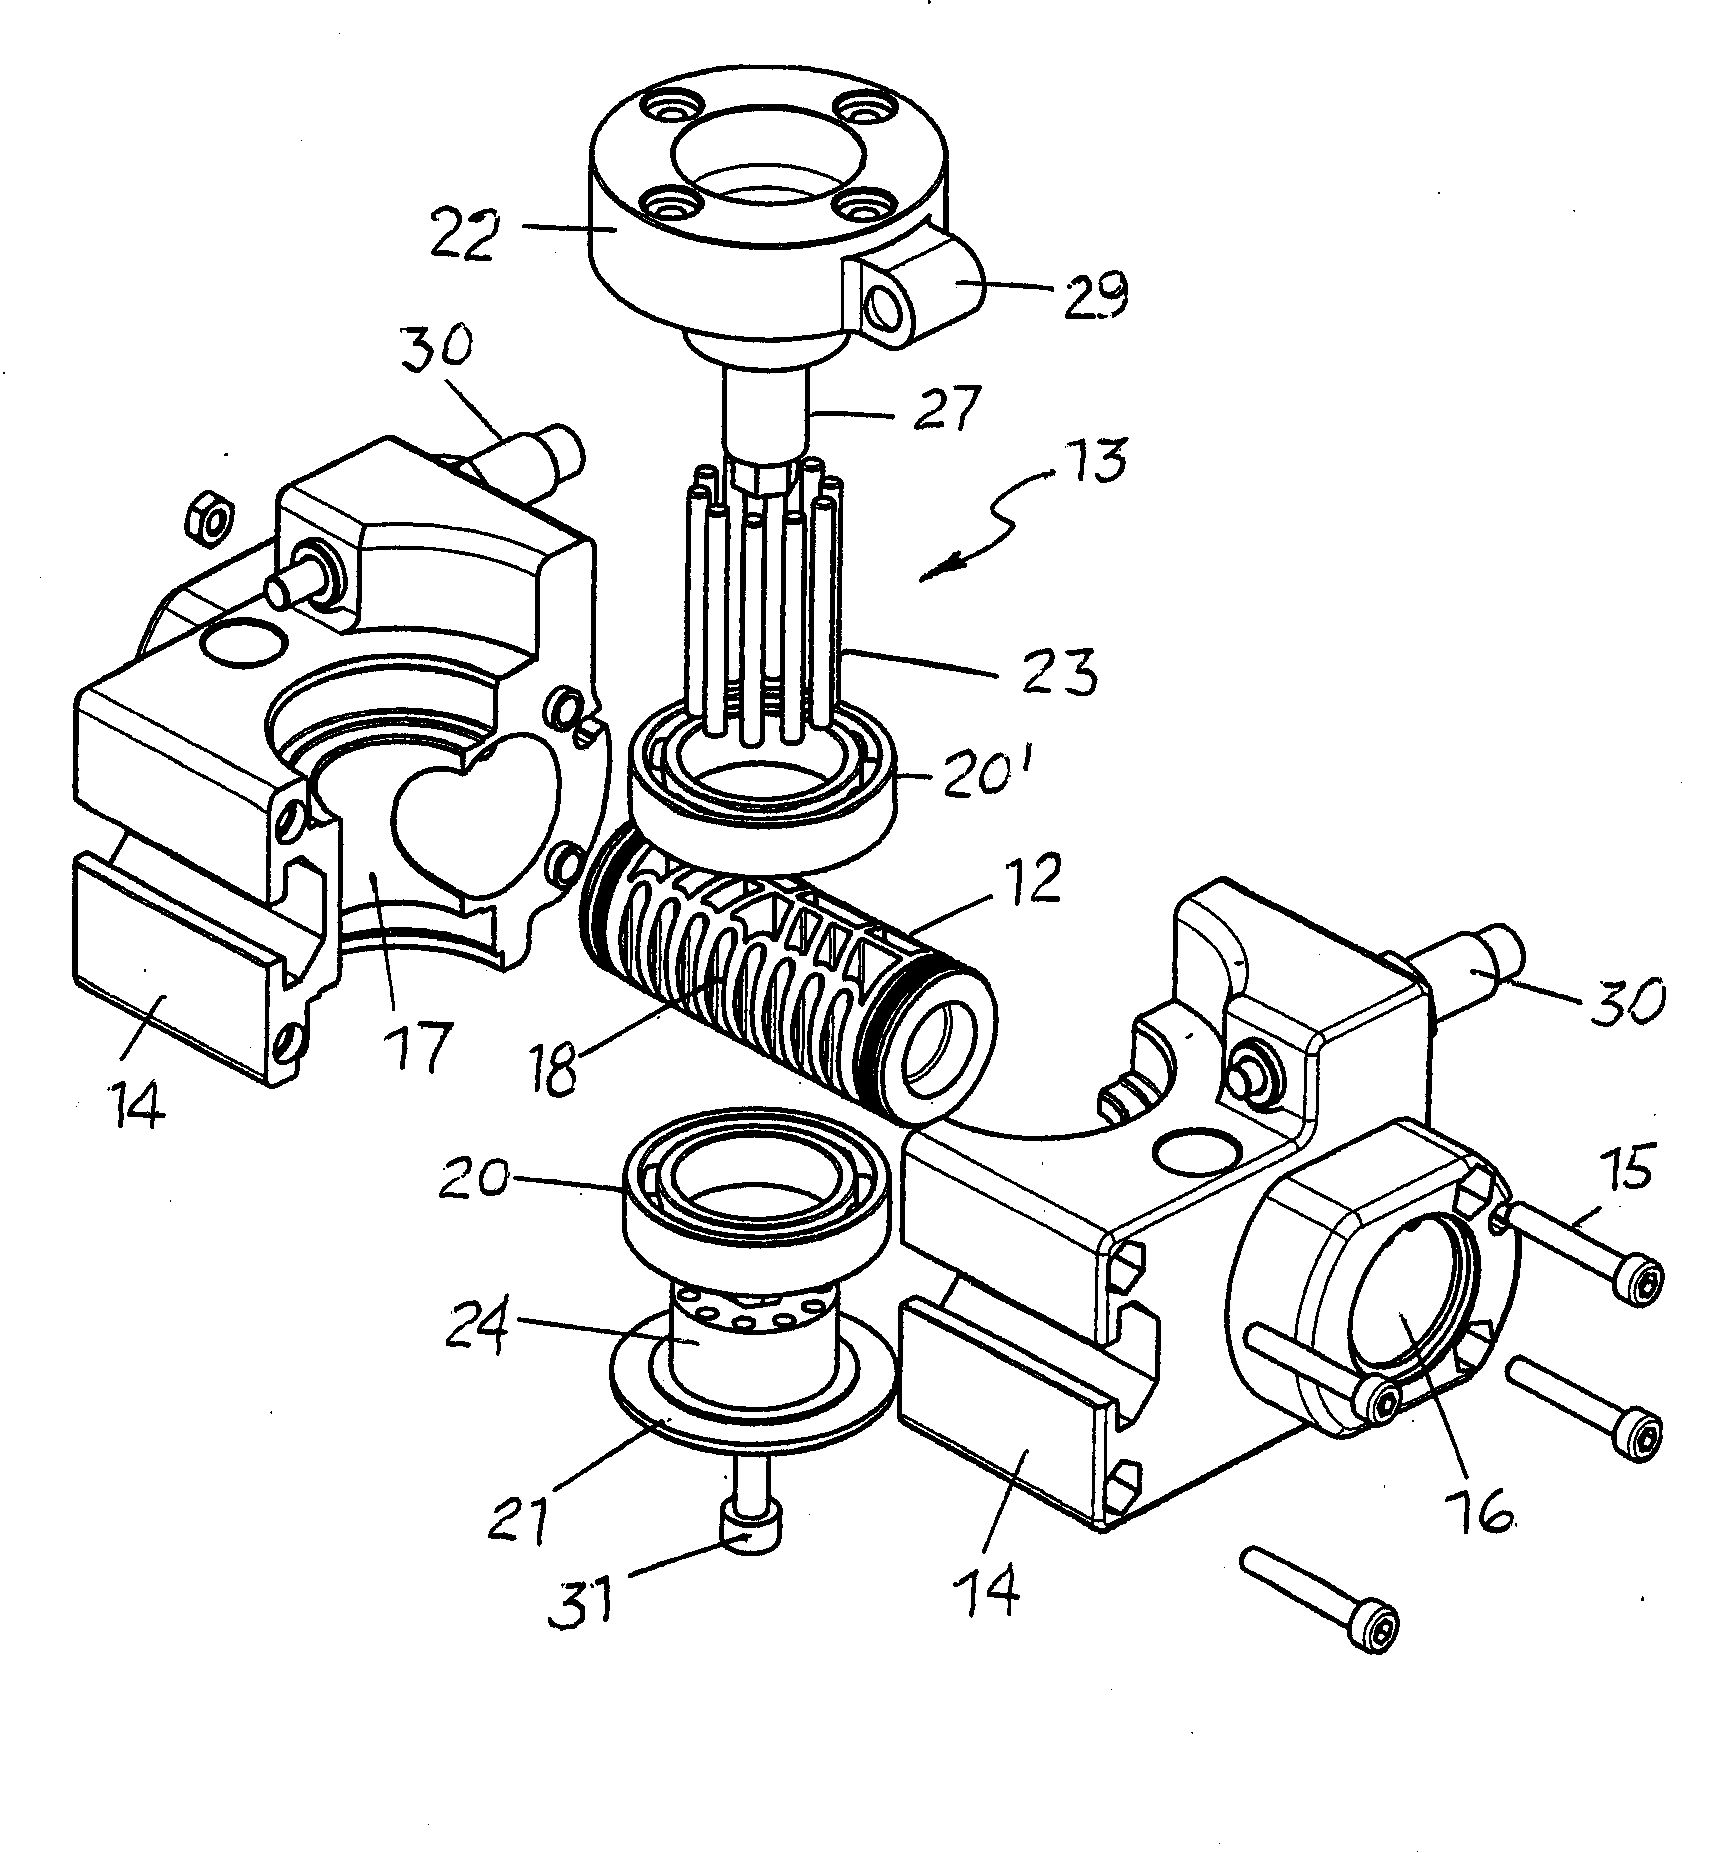 Pneumatic rotary actuator